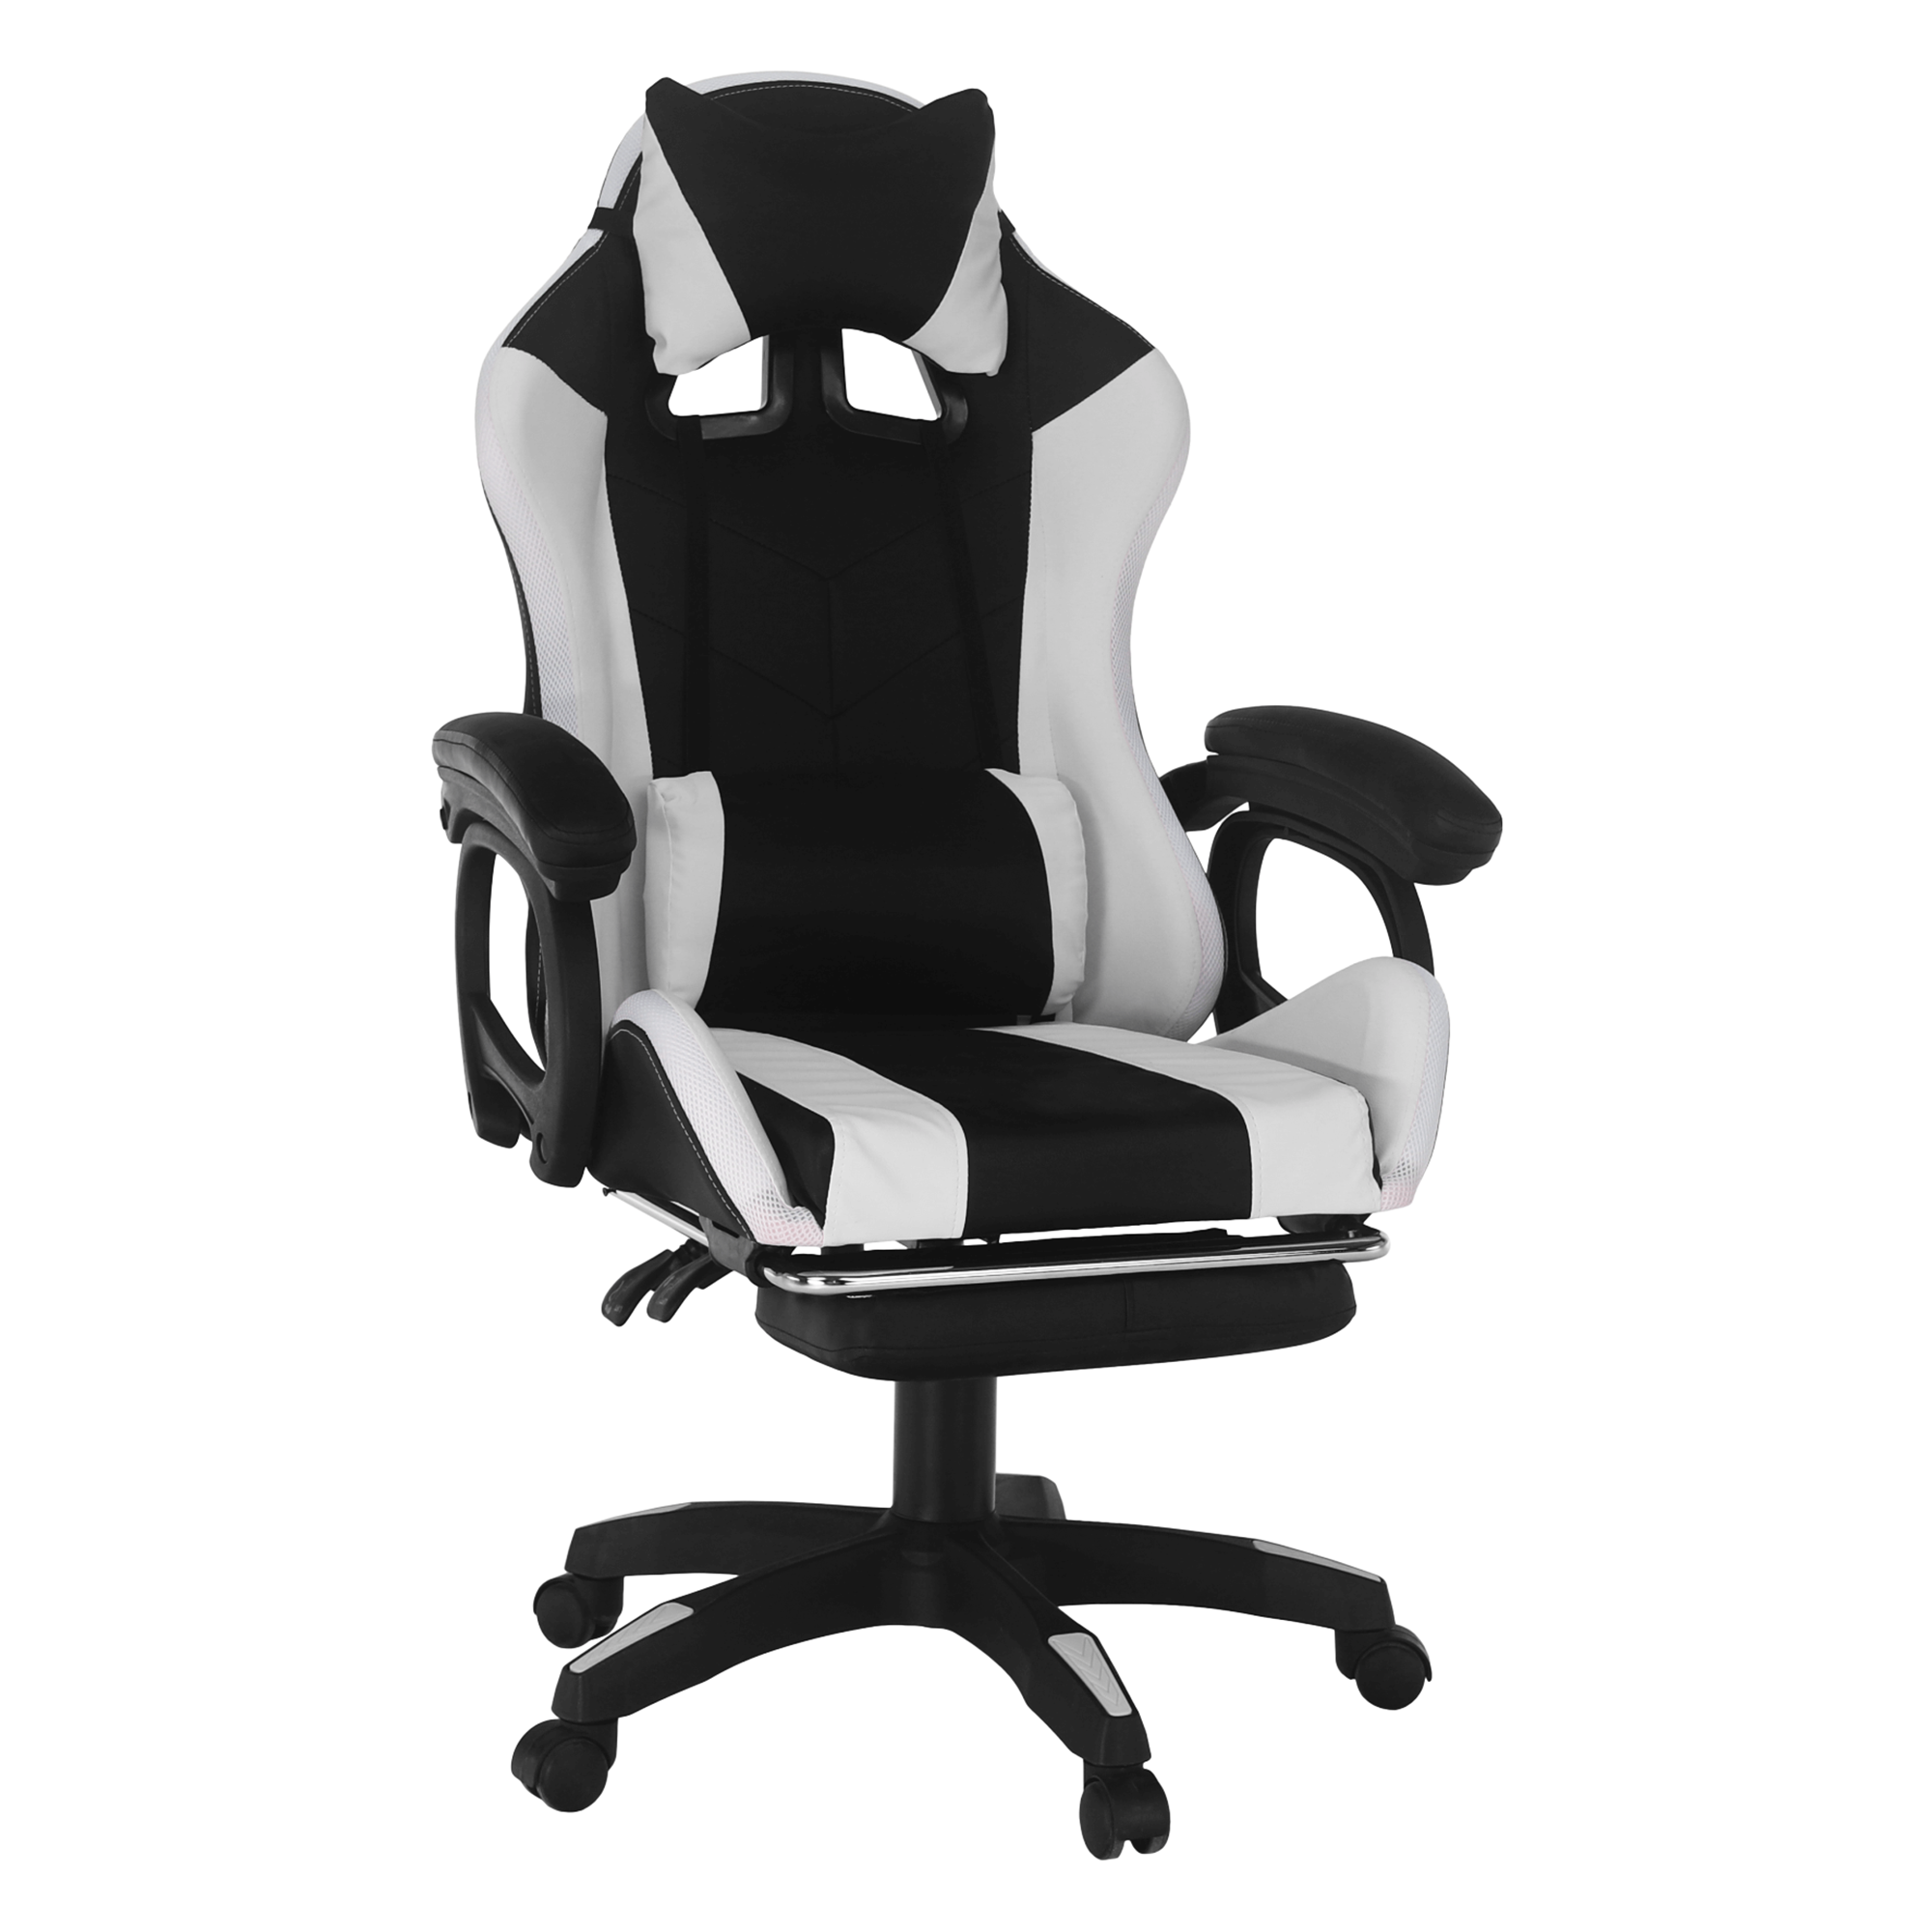 Irodai/gamer szék RGB LED világítással, fekete/fehér, JOVELA (TK)